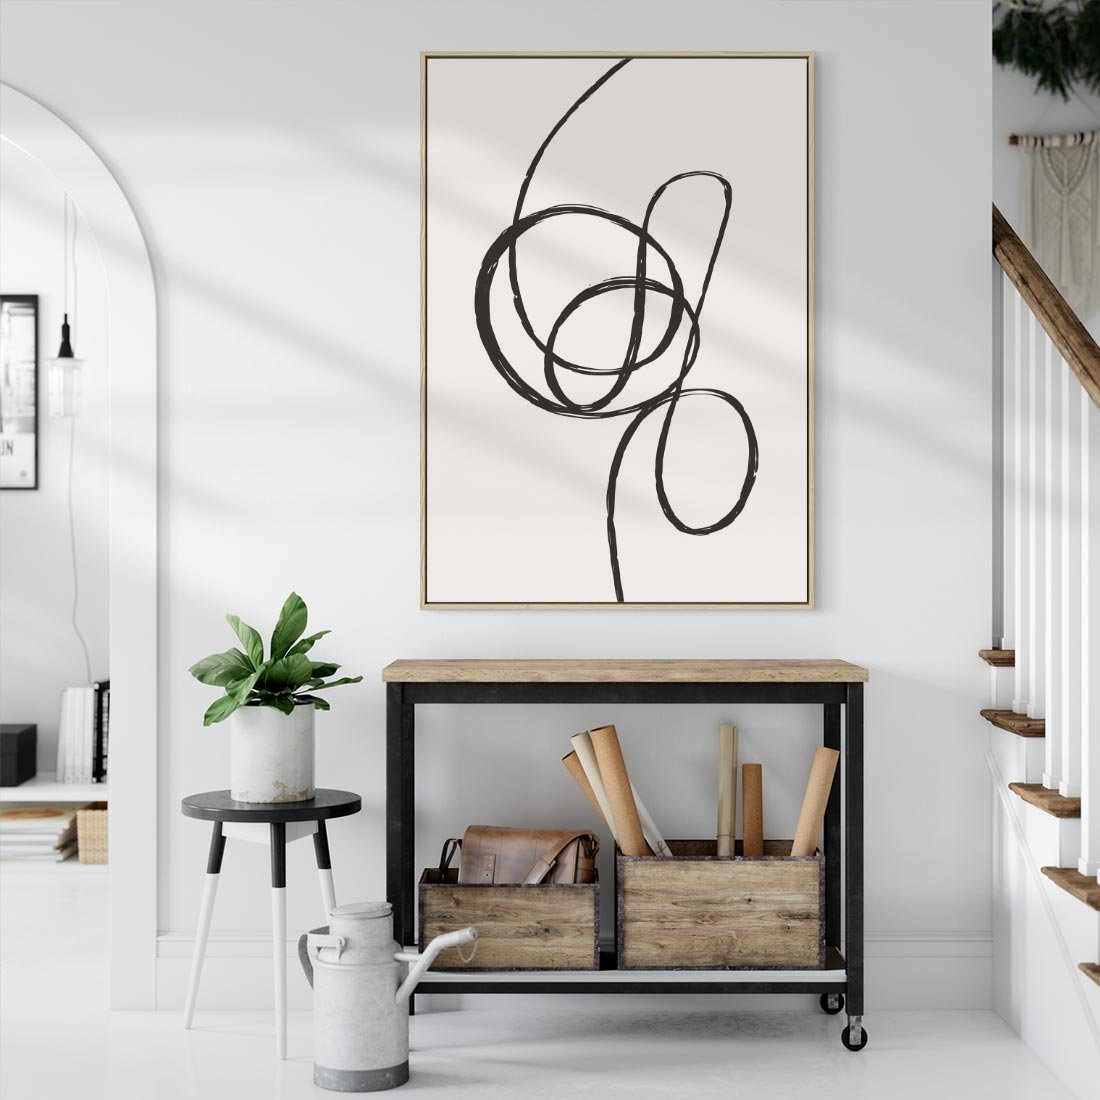 Obraz w ramie 50x70 - Migotliwa Kreatywność - abstrakcyjne szkicowane linie, minimalizm - rama drewno